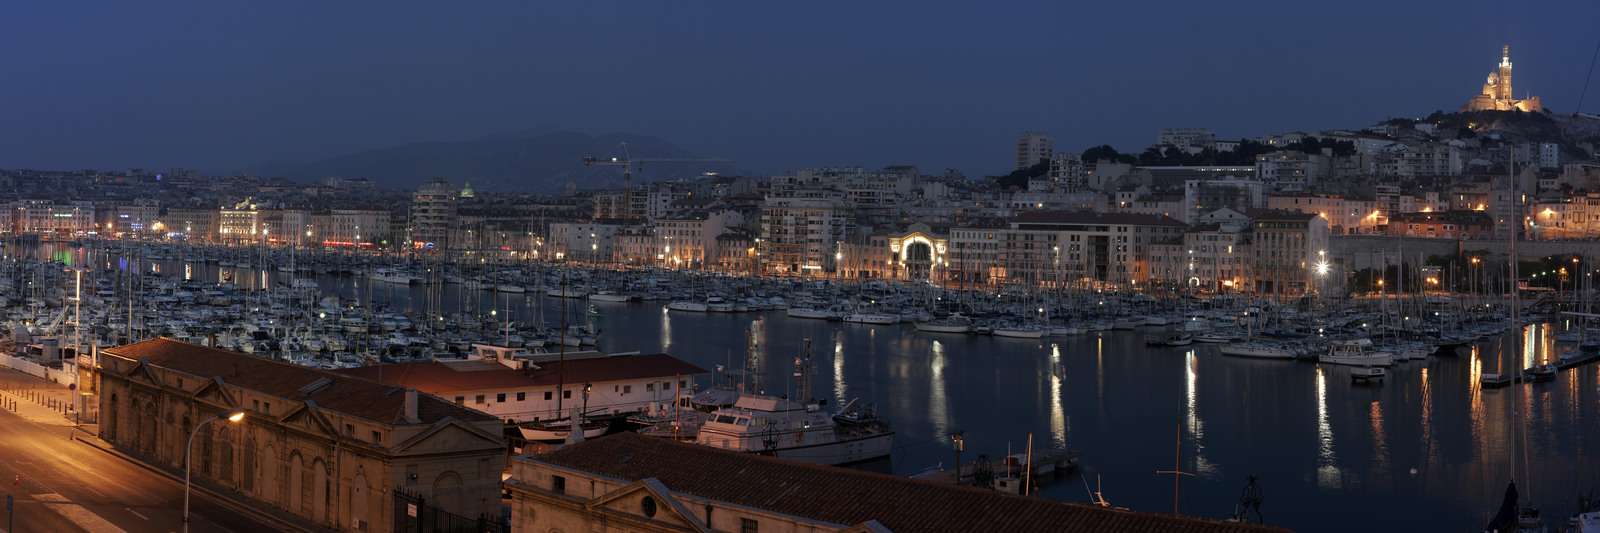 Vieux POrt Marseille